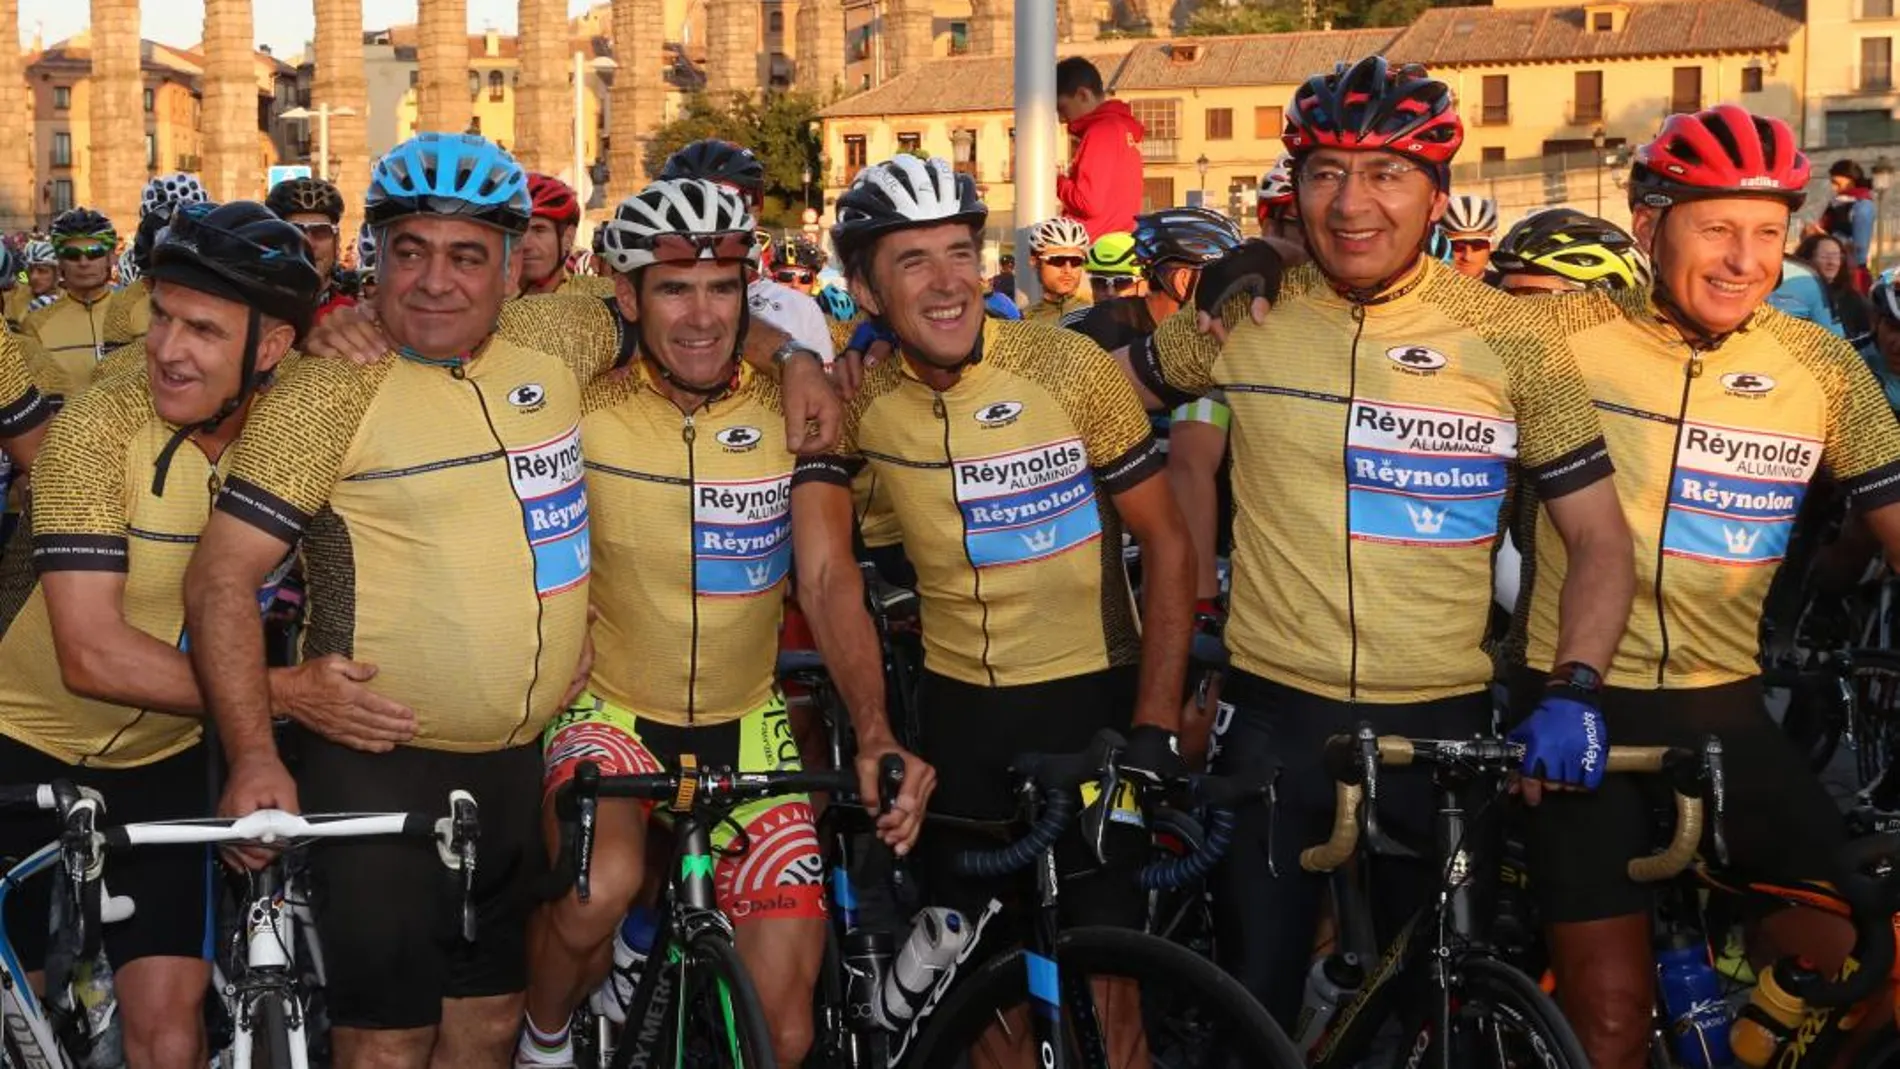 Celebración de la XXV edición de la Marcha Cicloturista Pedro Delgado, que este año homenajea al equipo Reynolds y a sus componentes, que ayudaron al campeón segoviano a ganar el Tour de 1988, que celebra su 30 aniversario